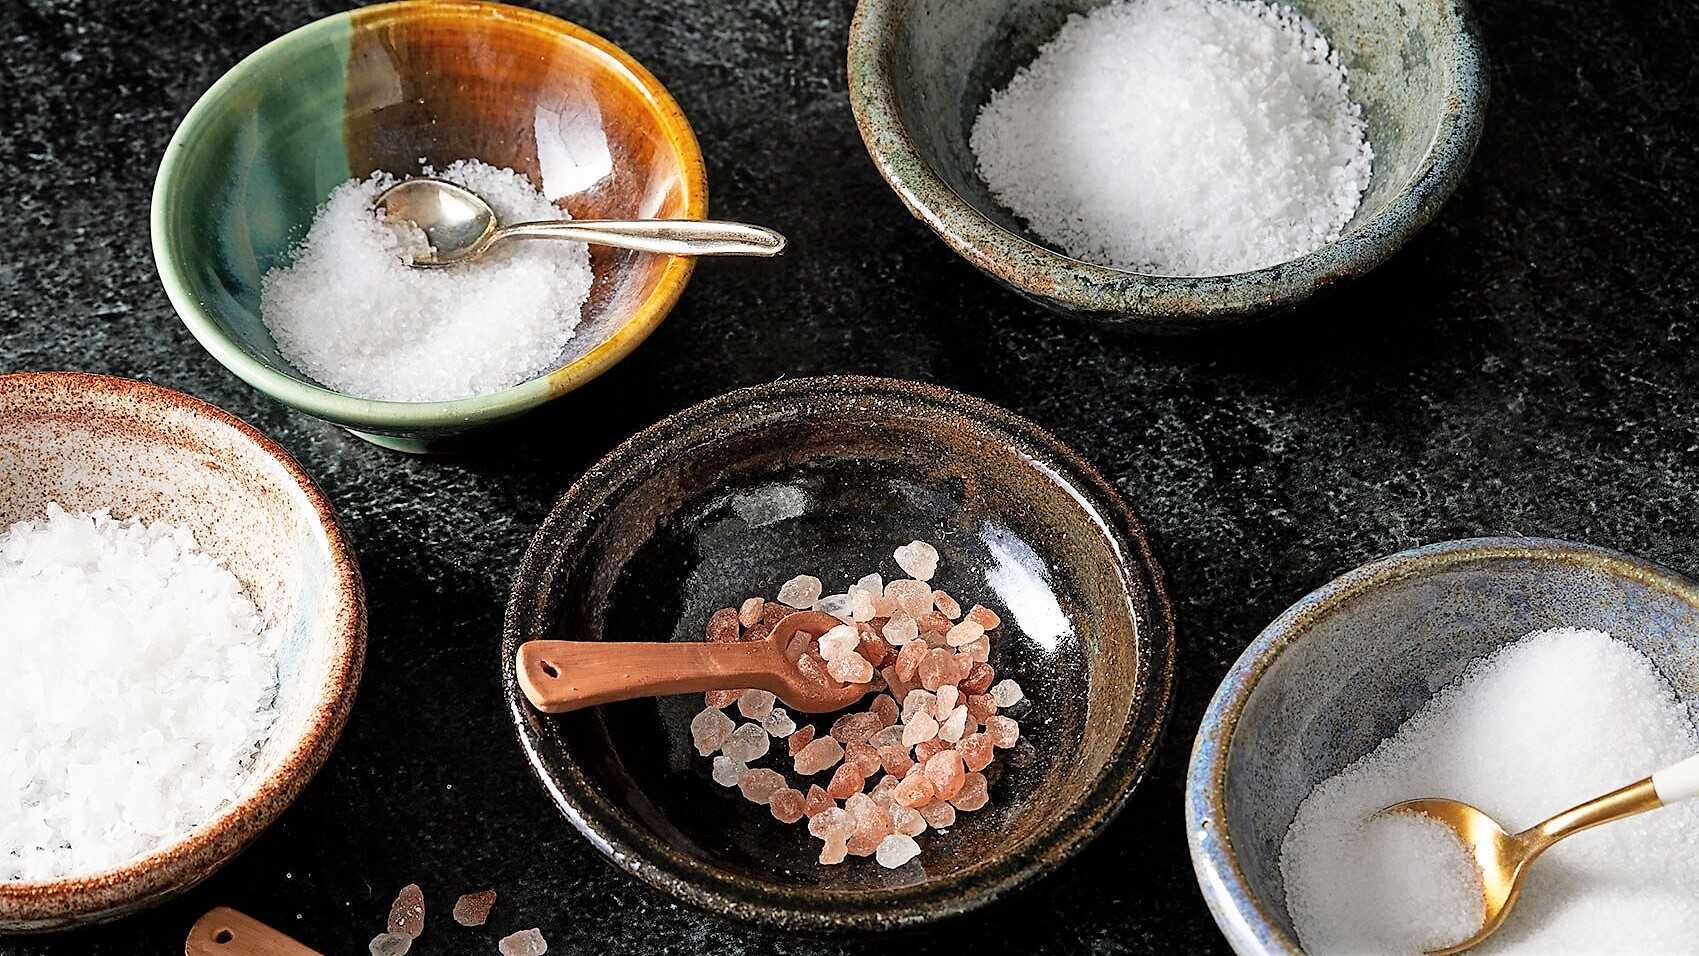 Сколько в граммах: почему употребление лишней соли может быть полезно для организма — рт на русском